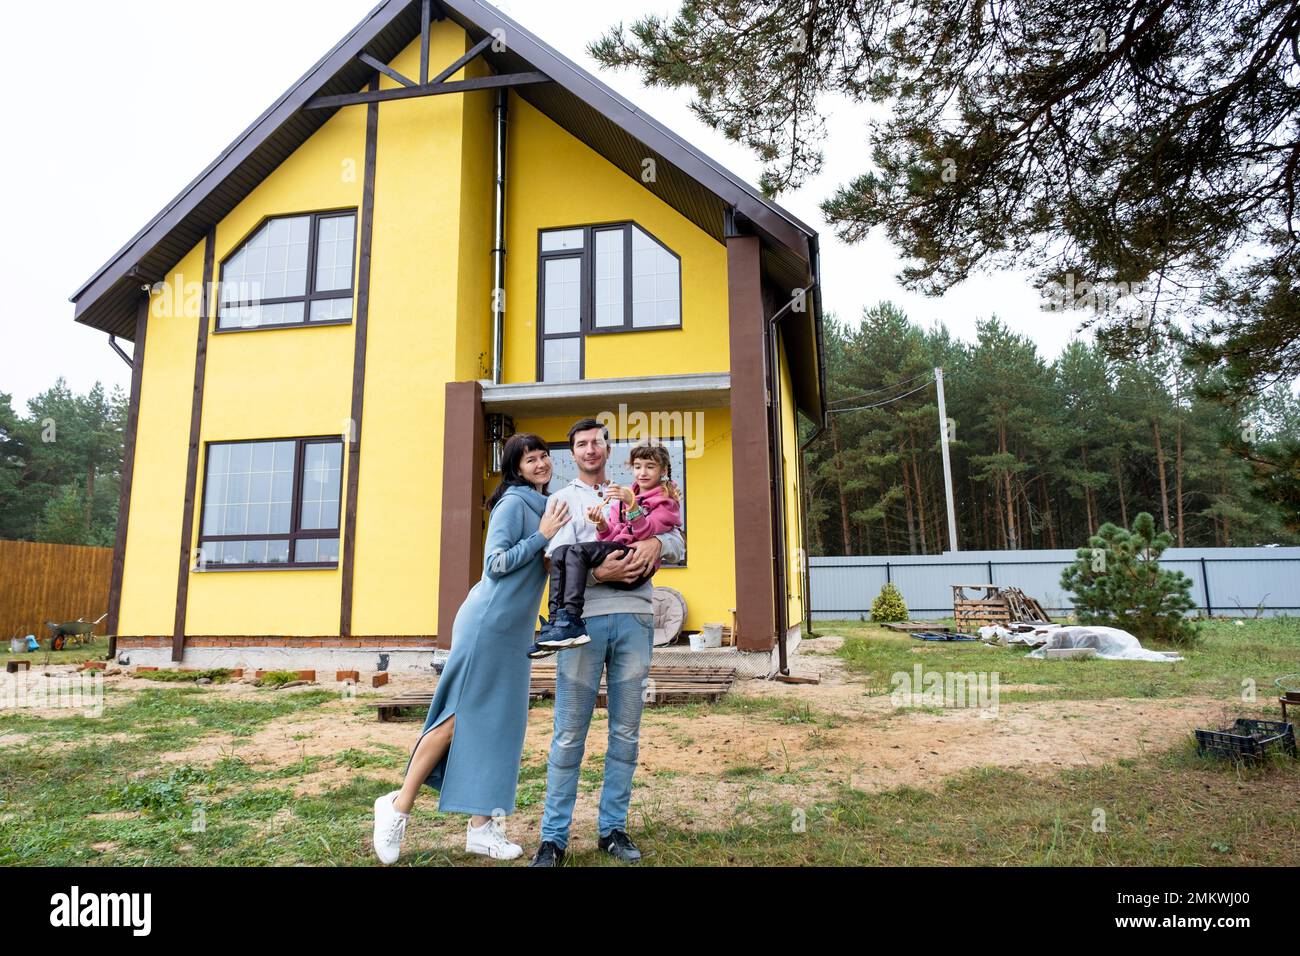 Famille heureuse dans la cour d'une maison inachevée - achat d'un chalet, hypothèque, prêt, relocalisation, construction Banque D'Images